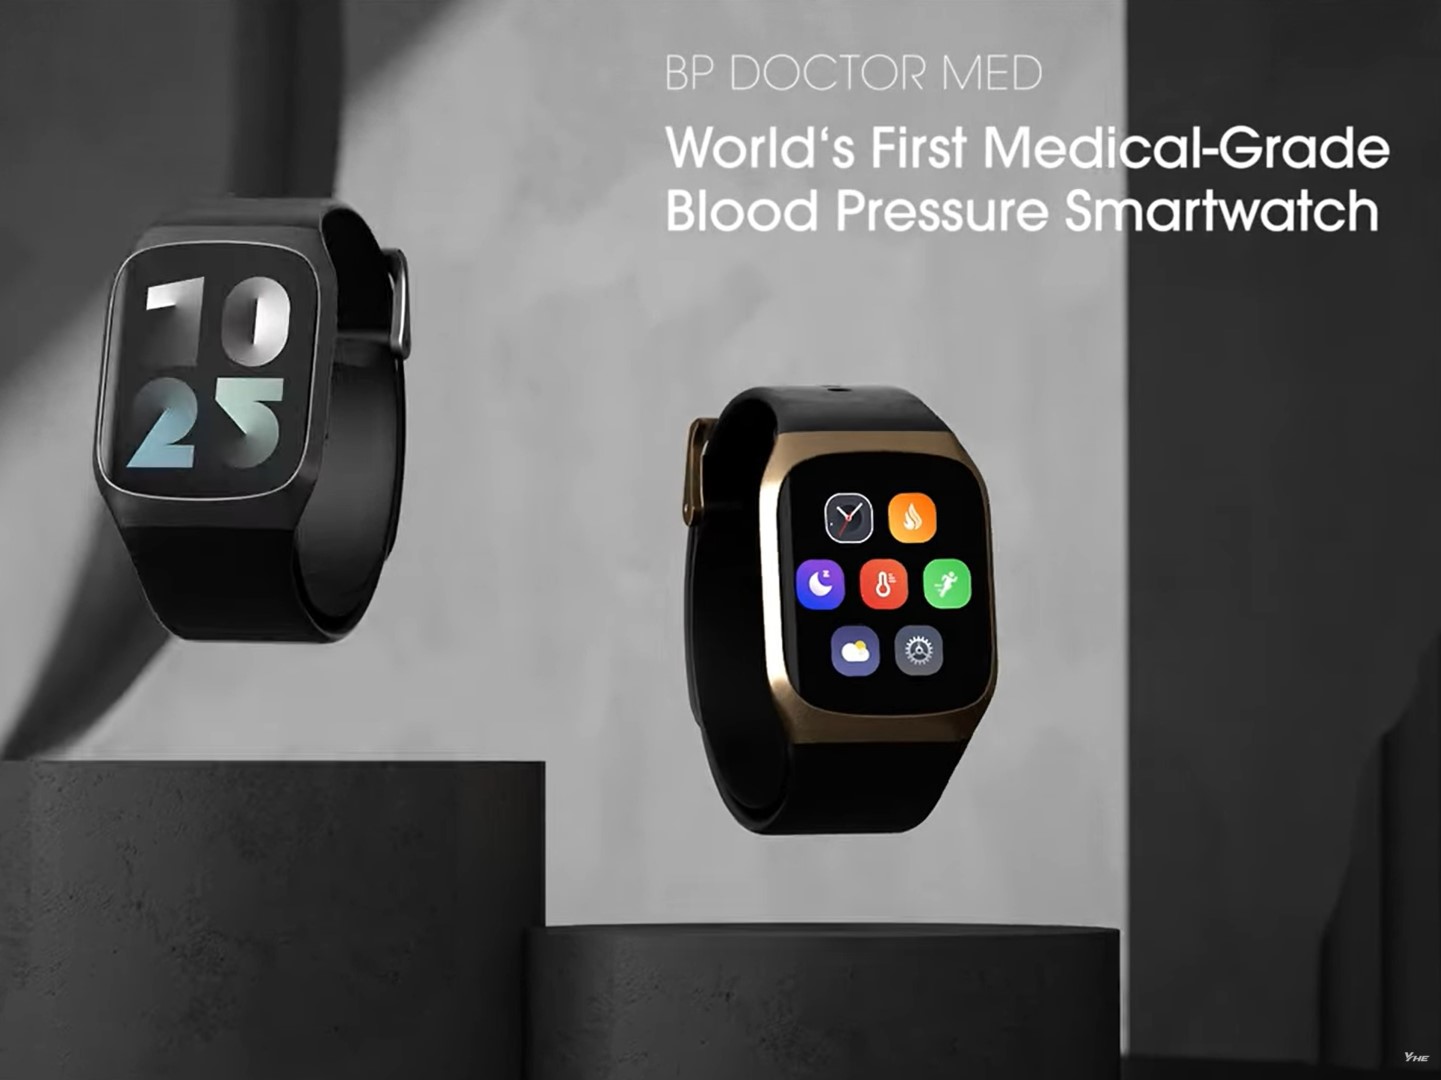 Steel Quartz Watch Nurse Watch Brooch Tunic Doctor Fob Watch Medical Watch  B3 | eBay